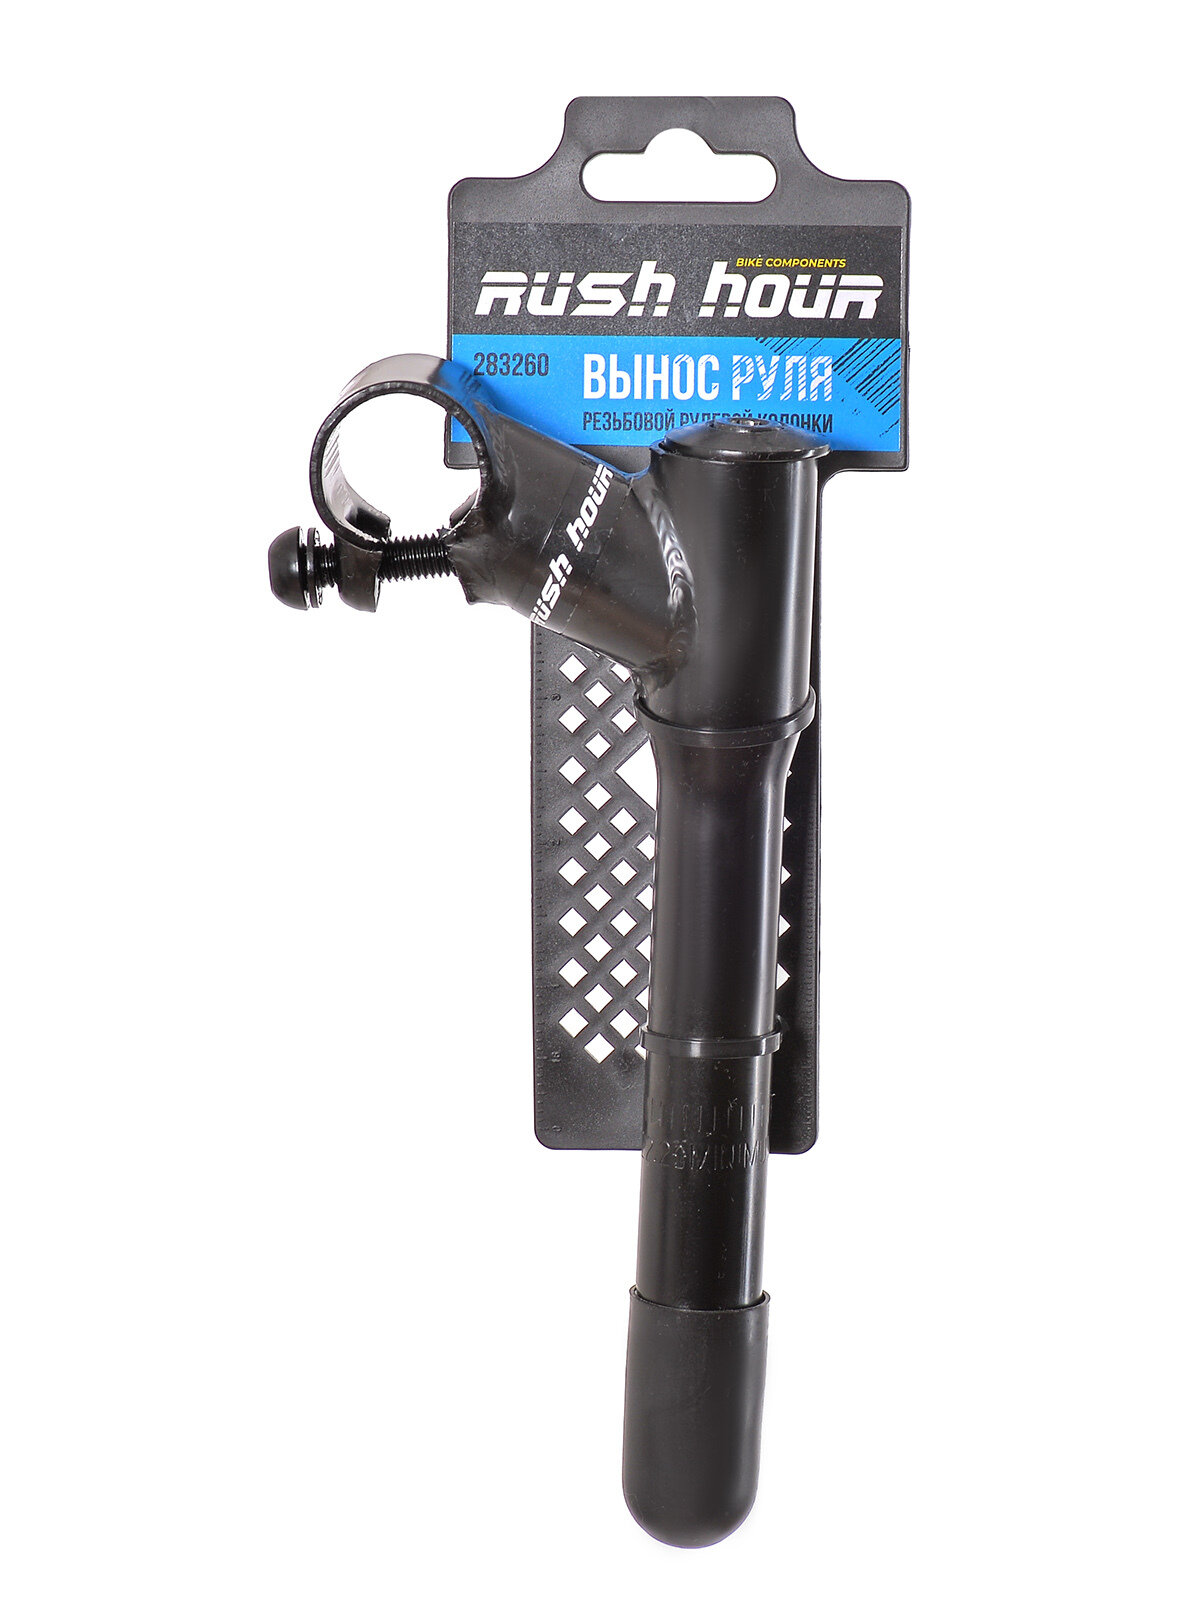 Вынос руля Rush Hour резьбовой рулевой колонки 25.4/22.2, L=60 мм